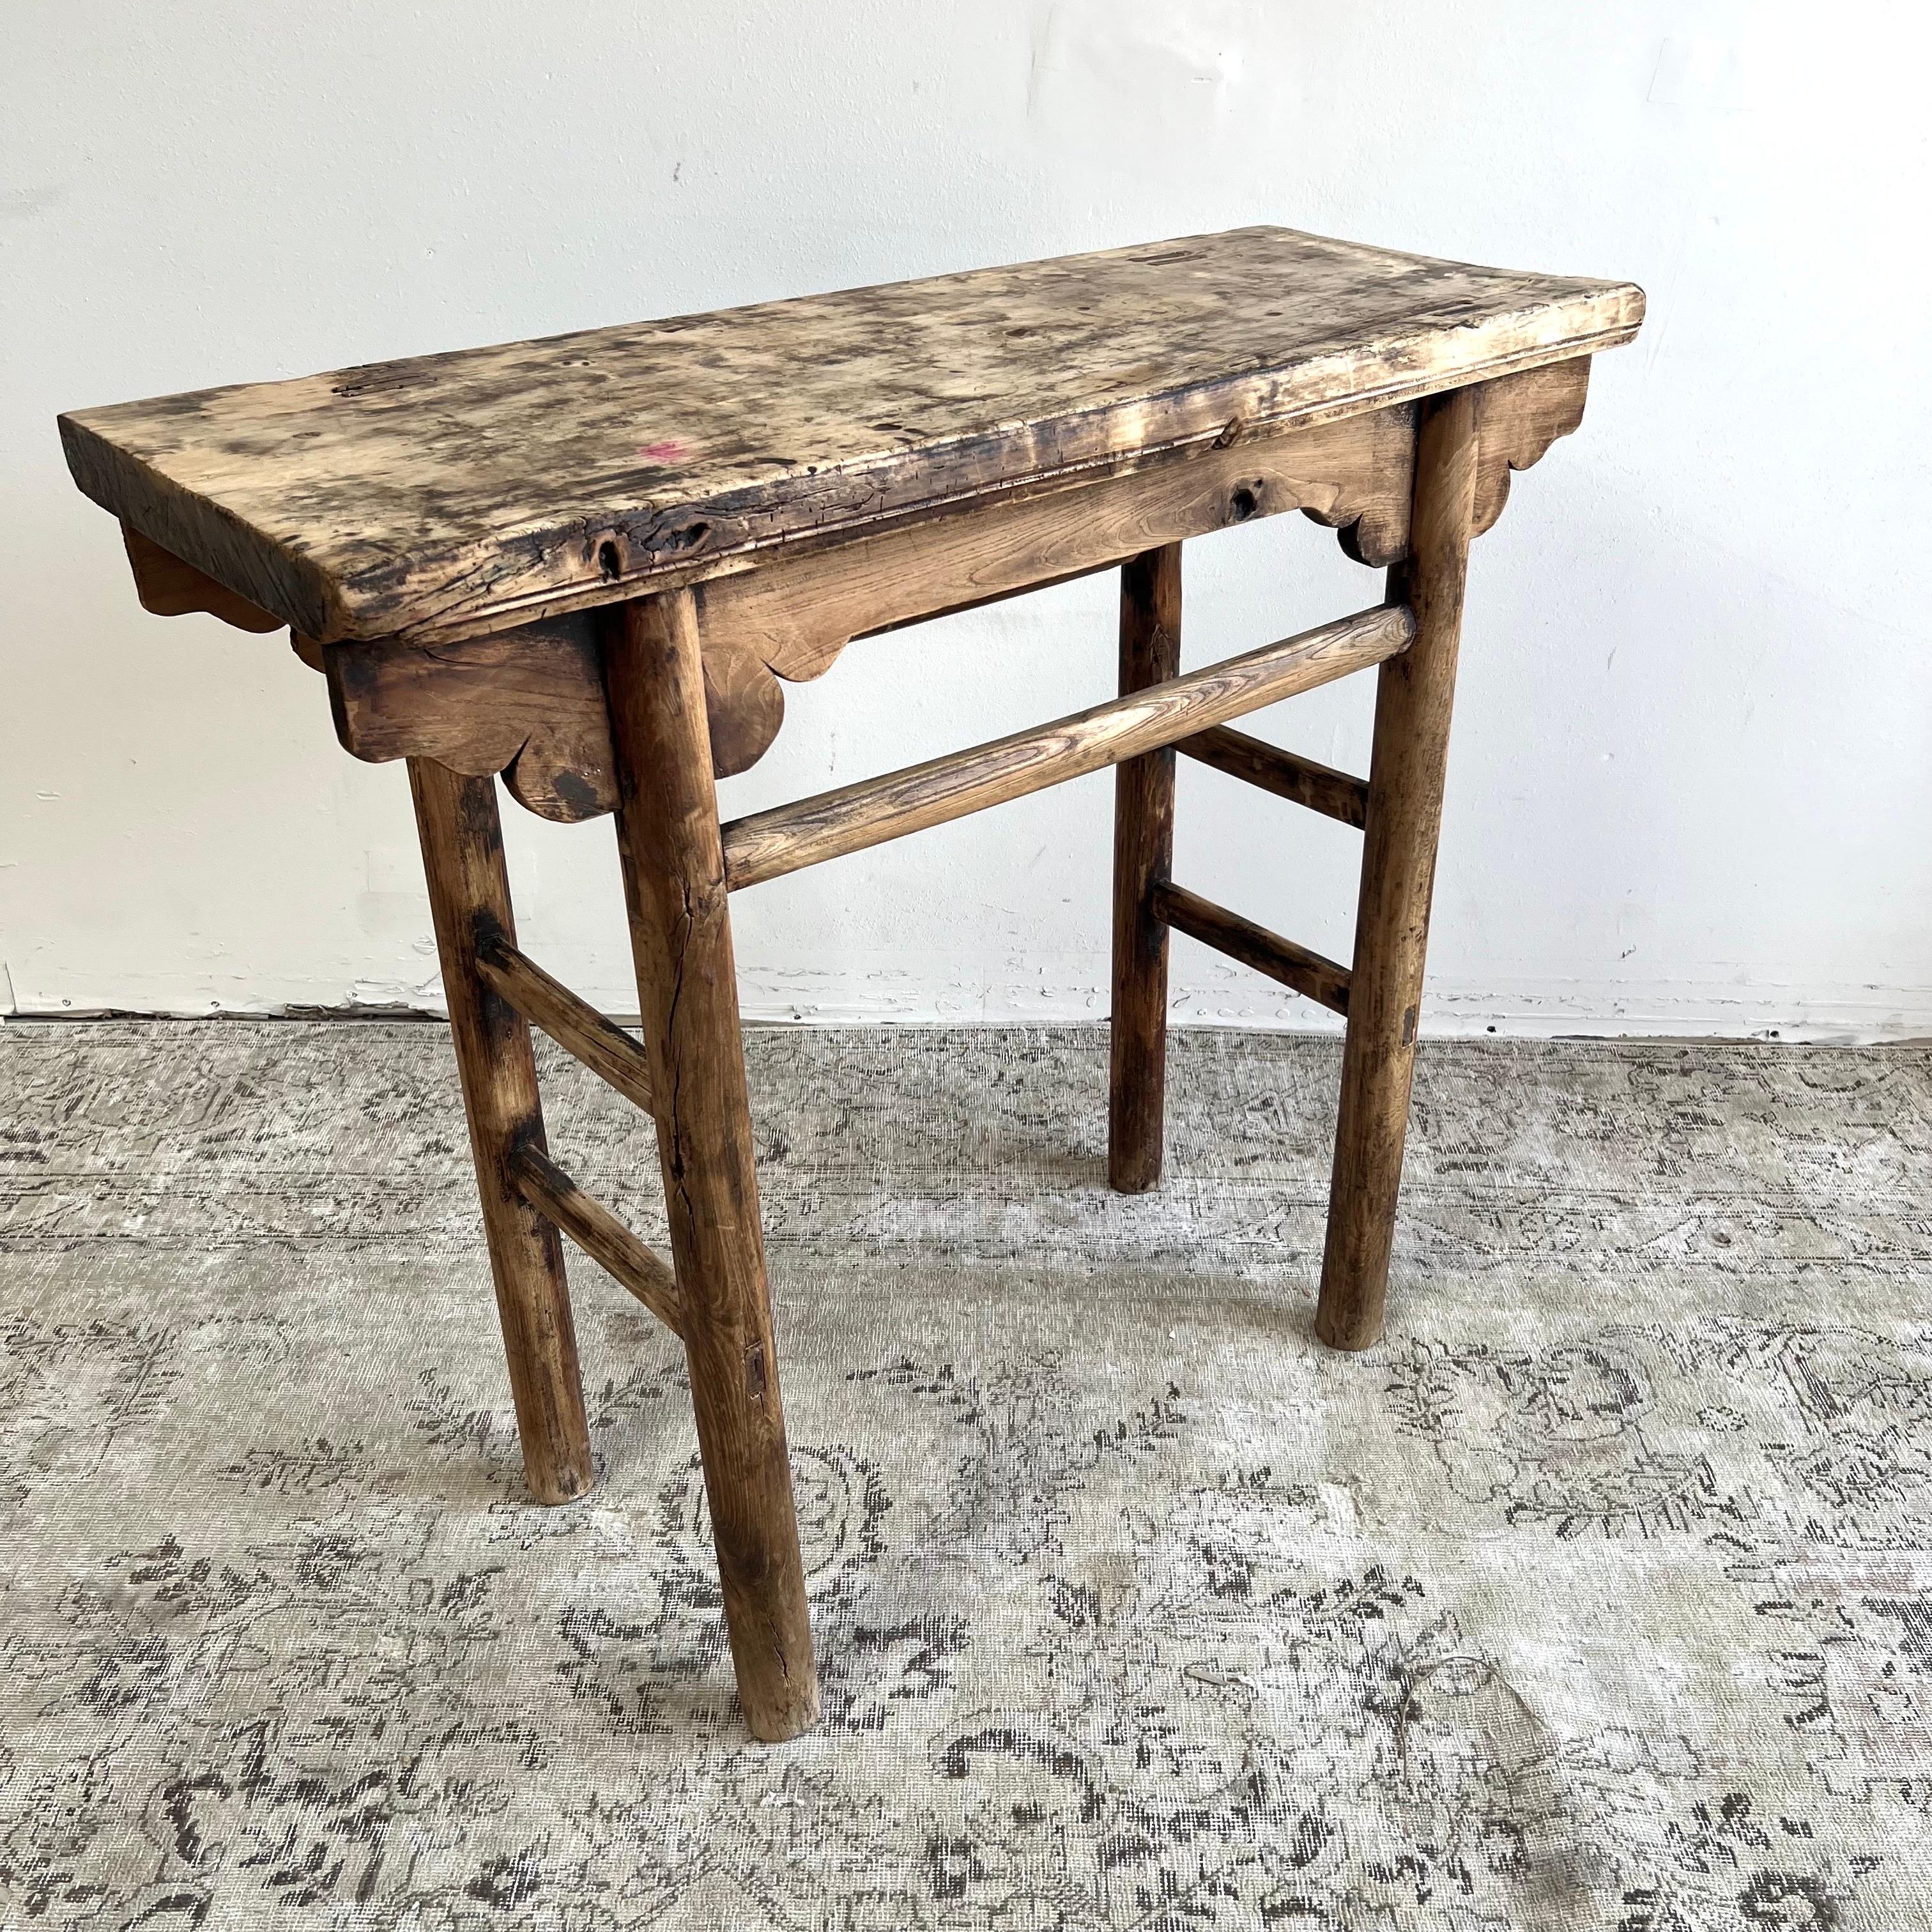 Vintage antike Ulme Holz Konsolentisch Schöne antike Patina, mit Verwitterung und Alter, diese sind solide und robust bereit für den täglichen Gebrauch, verwenden Sie als Eintrag Tisch, Sofa Tisch oder Konsole in einem Esszimmer. Hervorragend